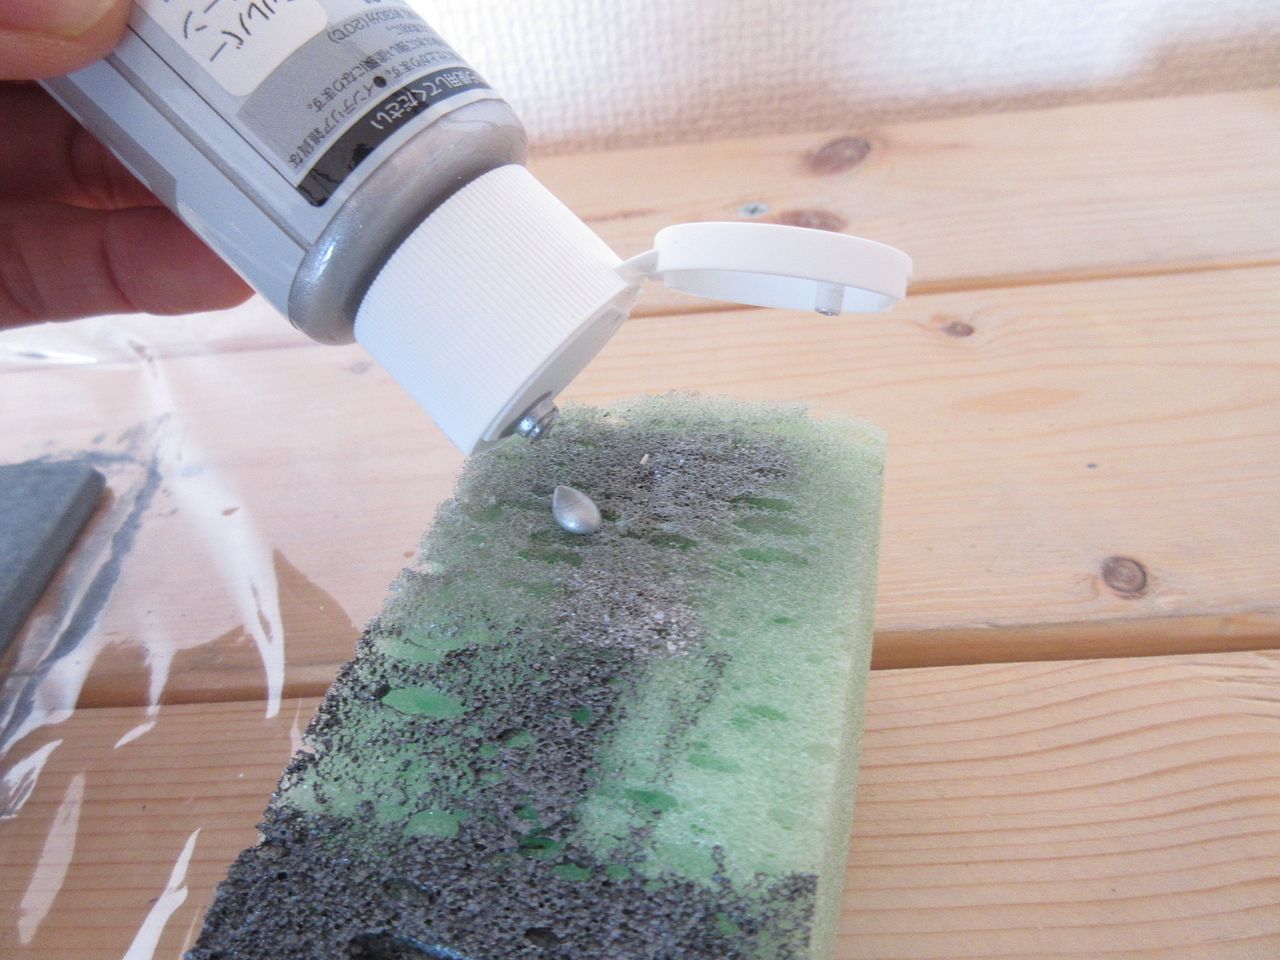 先程の状態で完成なのですが、もうひと手間加えていきます。スポンジを使って、シルバー色の水性塗料を重ね塗りしていきます。